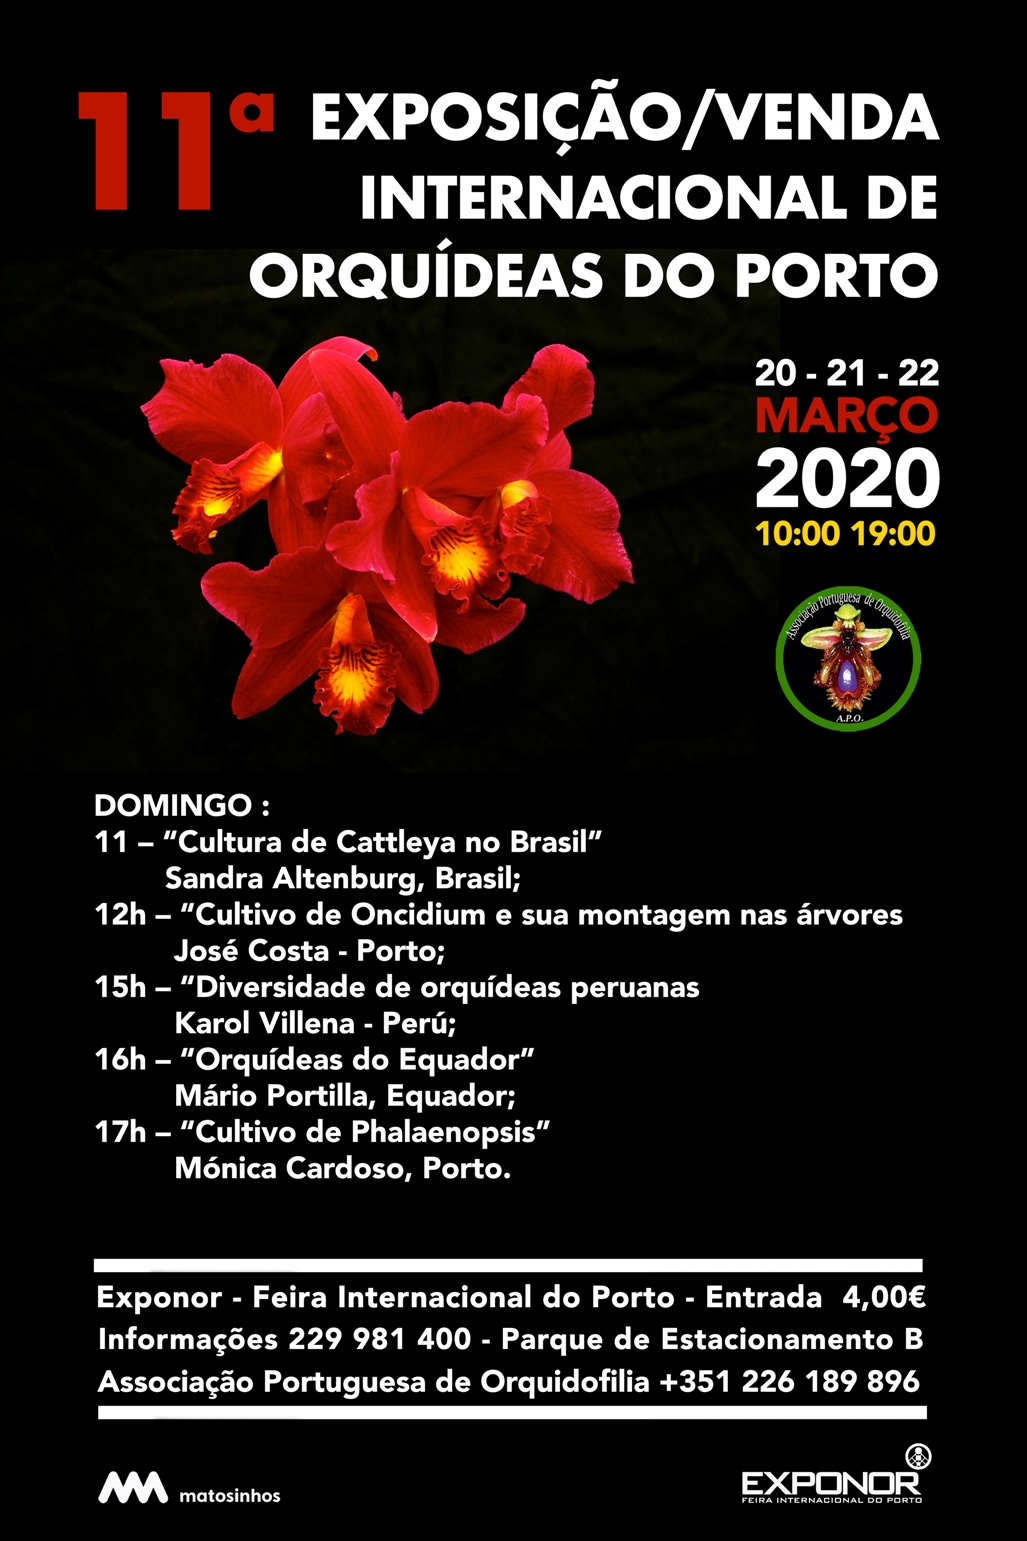 11.ª Exposição / Venda Internacional de Orquídeas do Porto - Evento